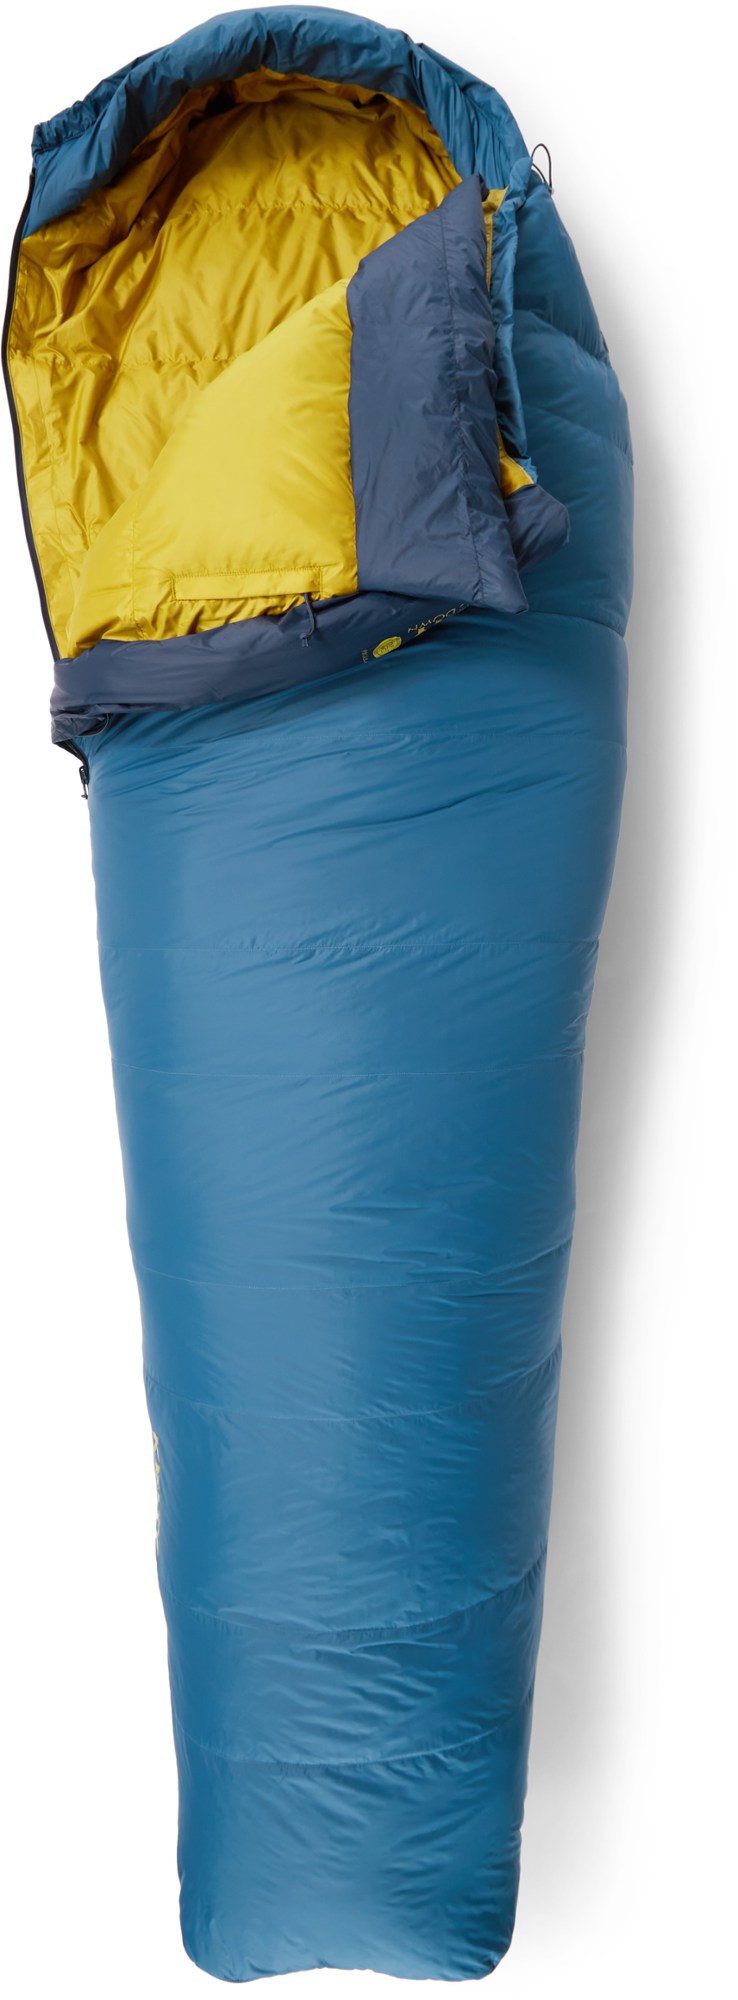 Kelty Cosmic Down 20 sleeping bag